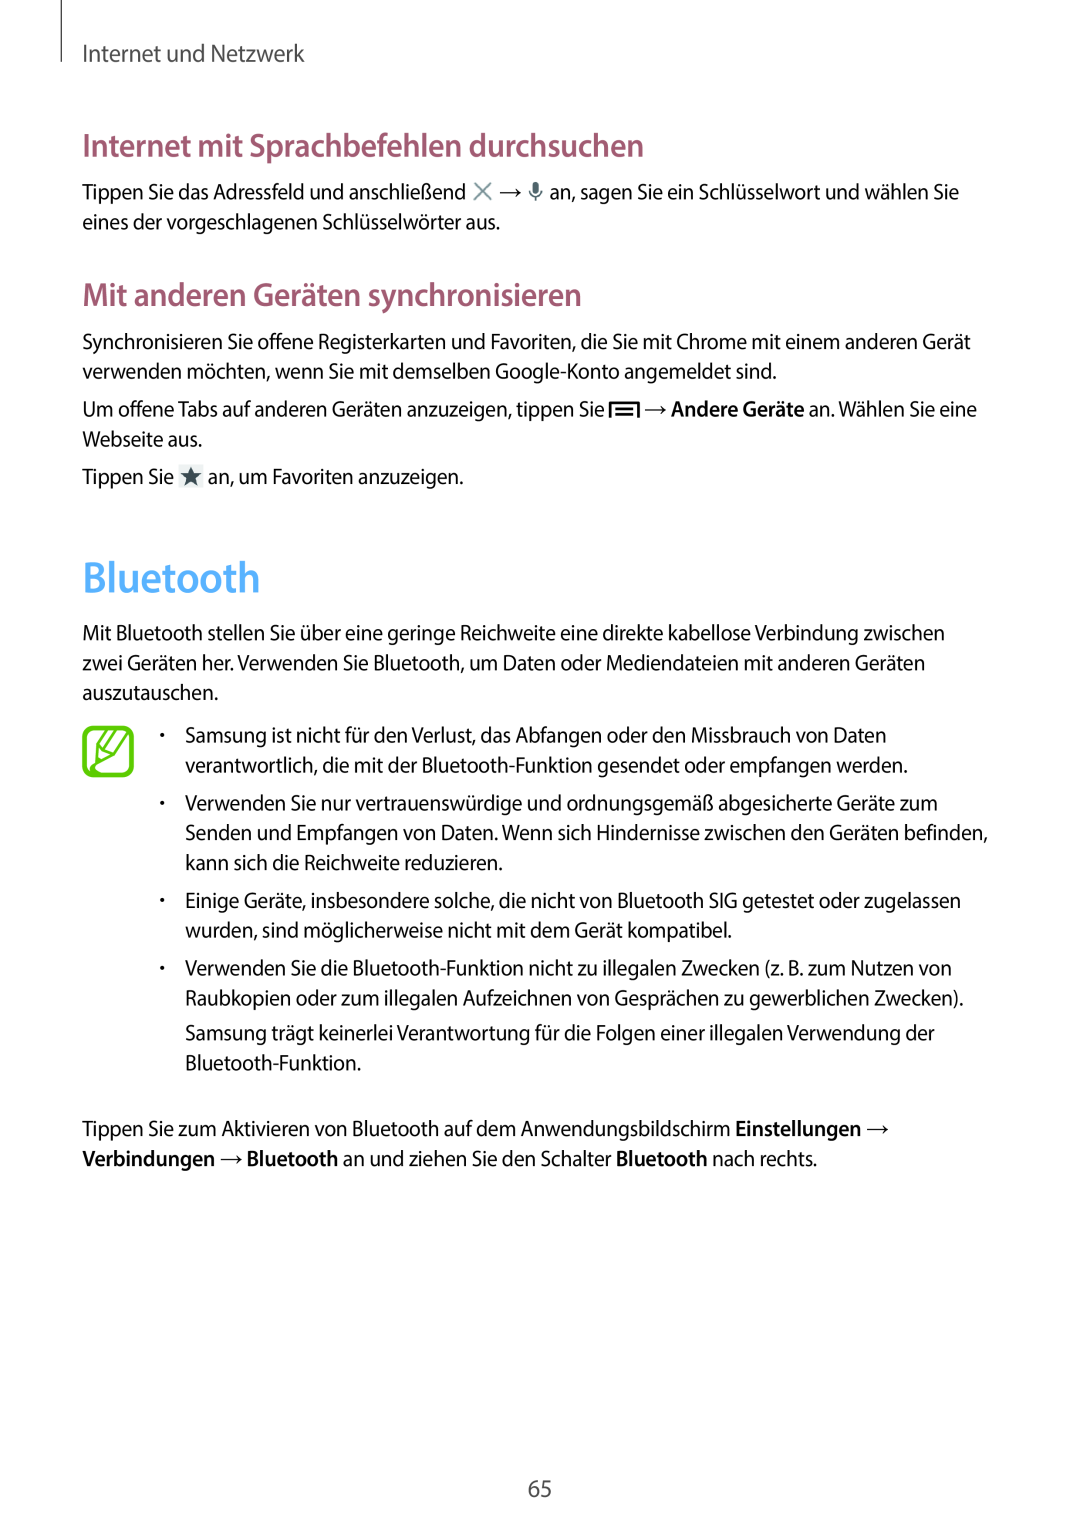 Samsung SM-C1010ZKADBT manual Bluetooth, Mit anderen Geräten synchronisieren, Internet mit Sprachbefehlen durchsuchen 